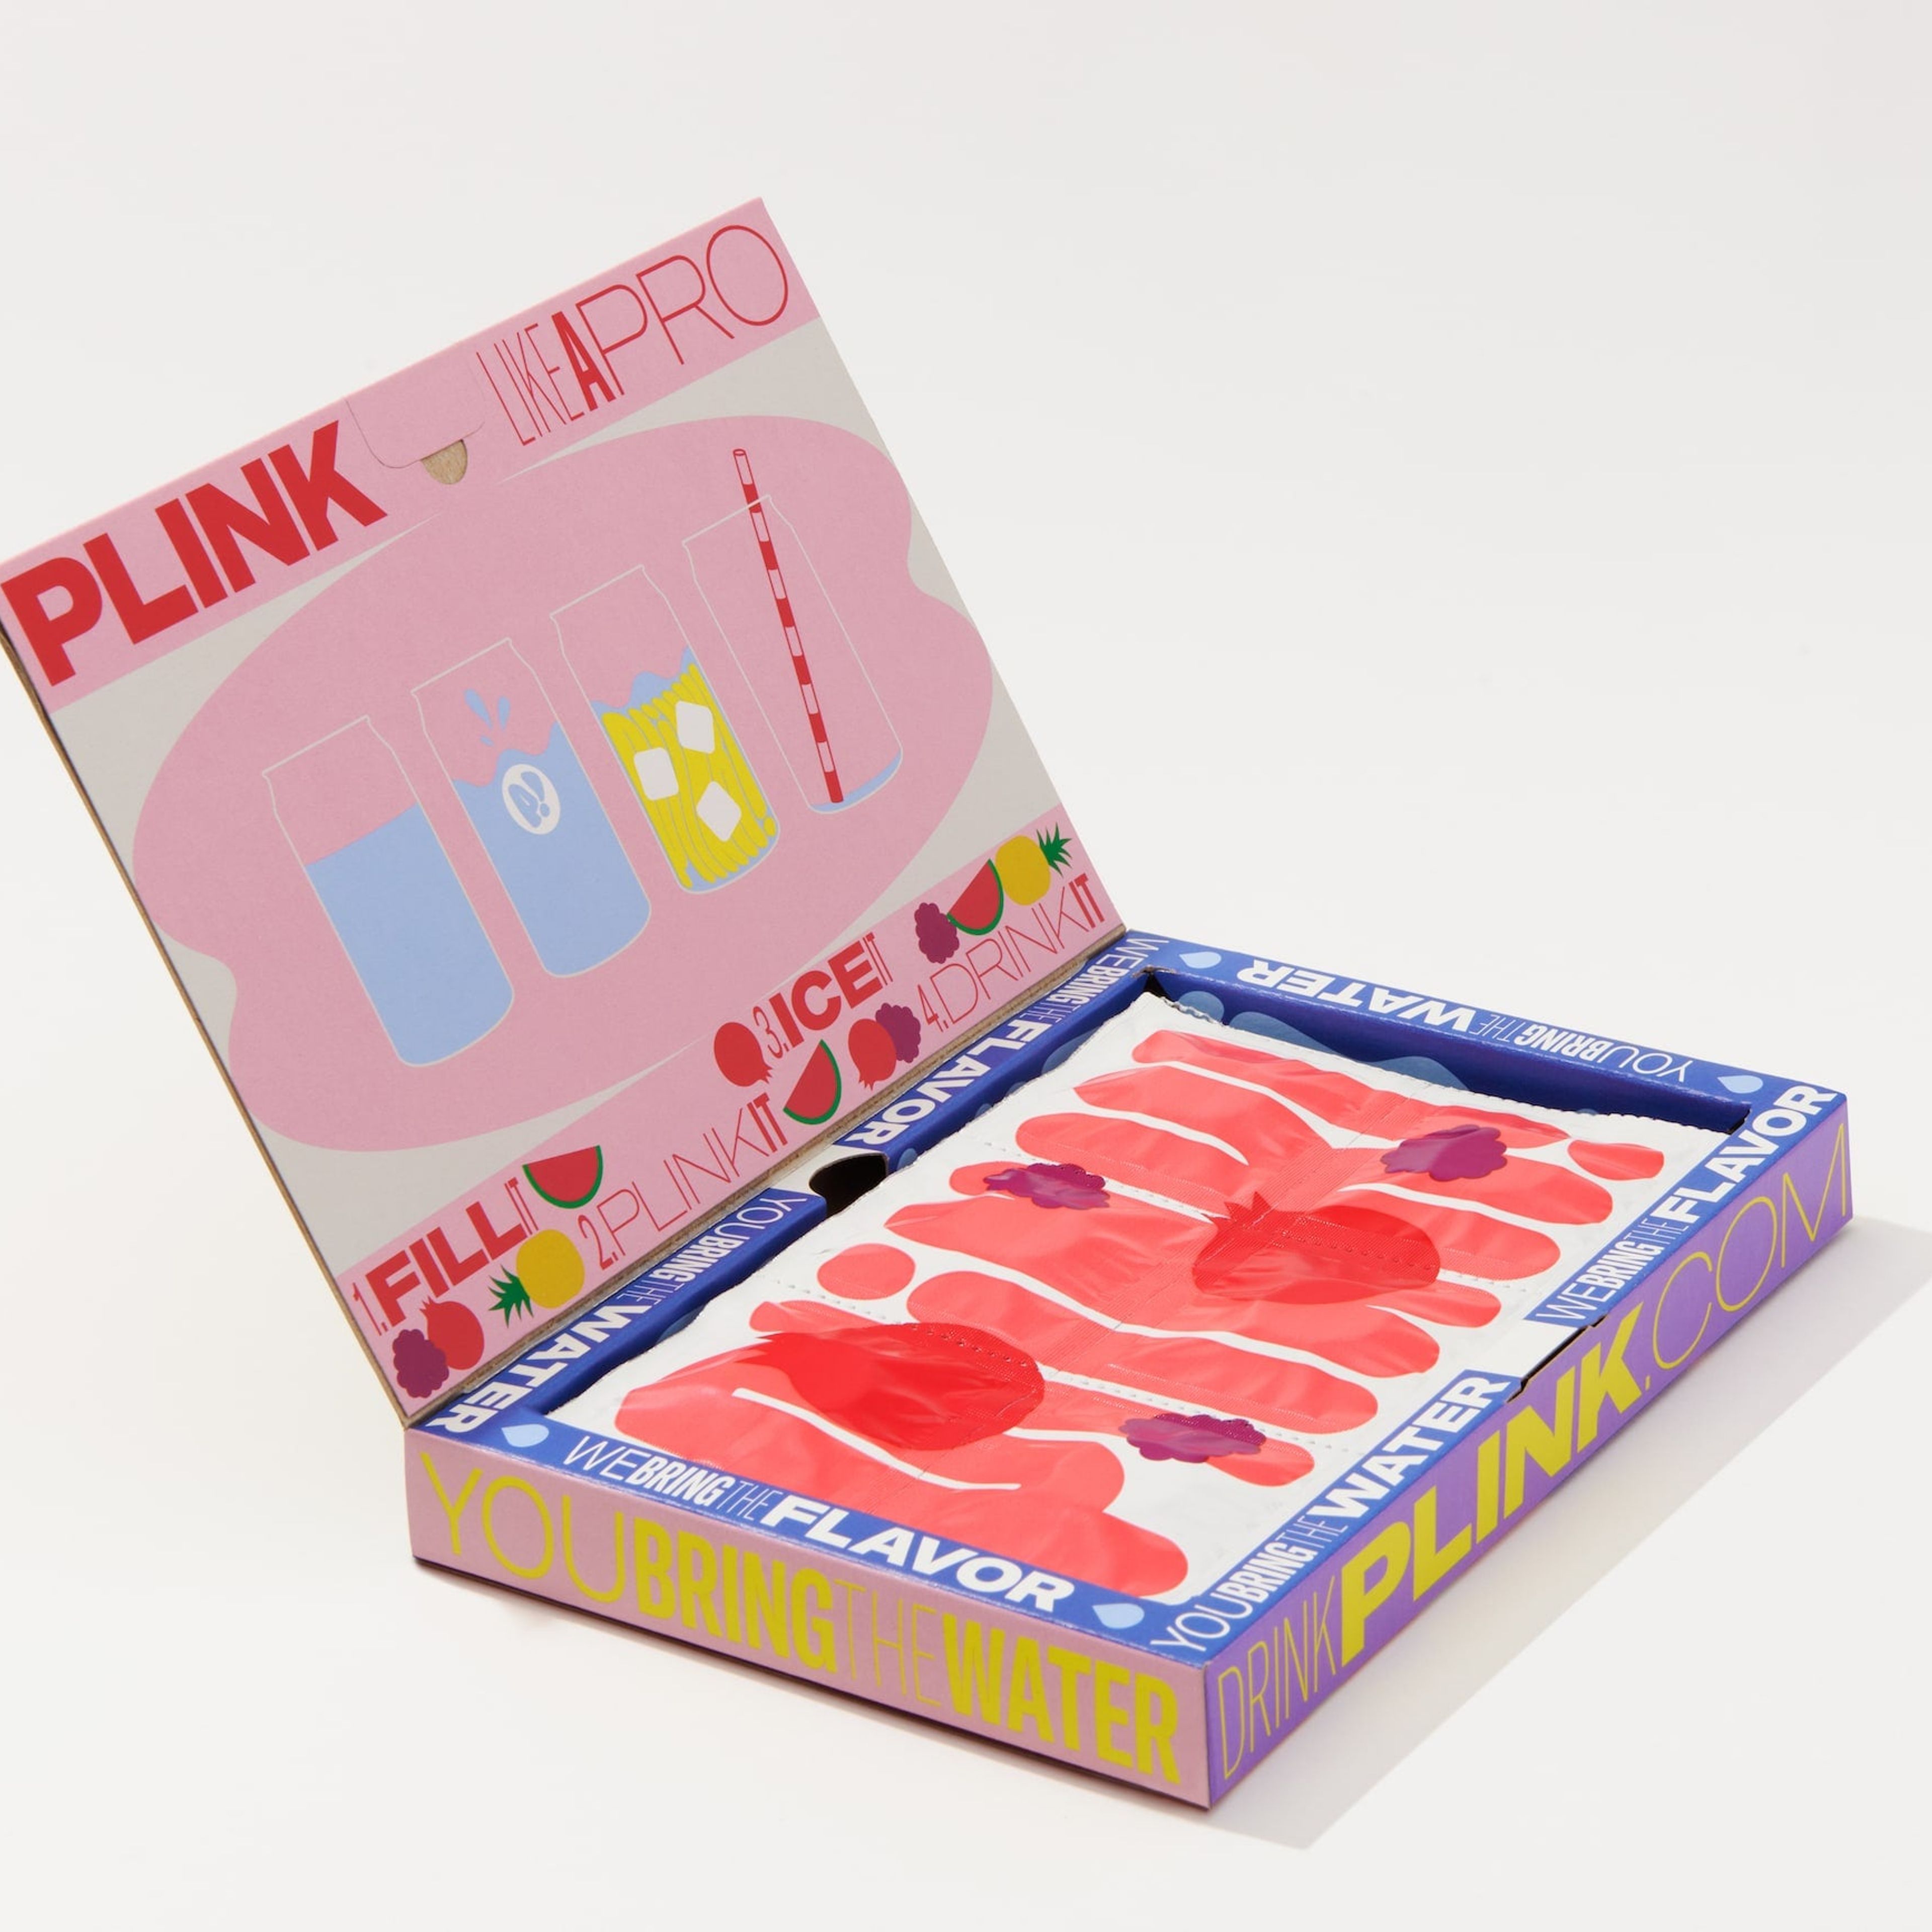 Plink! Juicebox Variety Pack